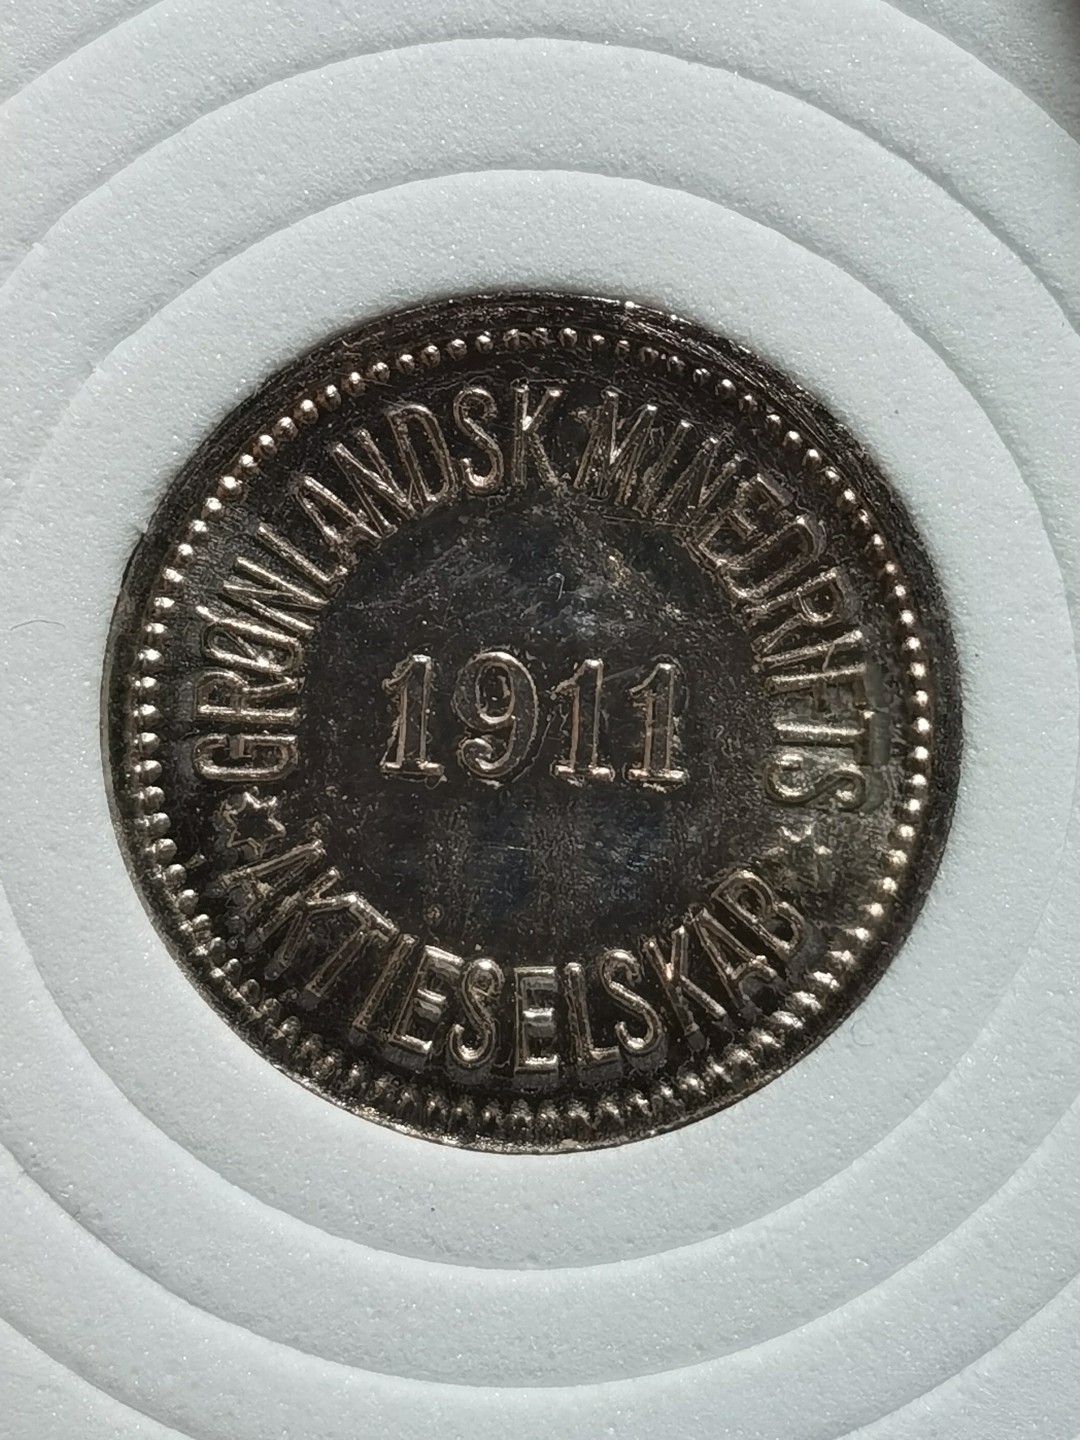 格陵兰 minedrift 1911